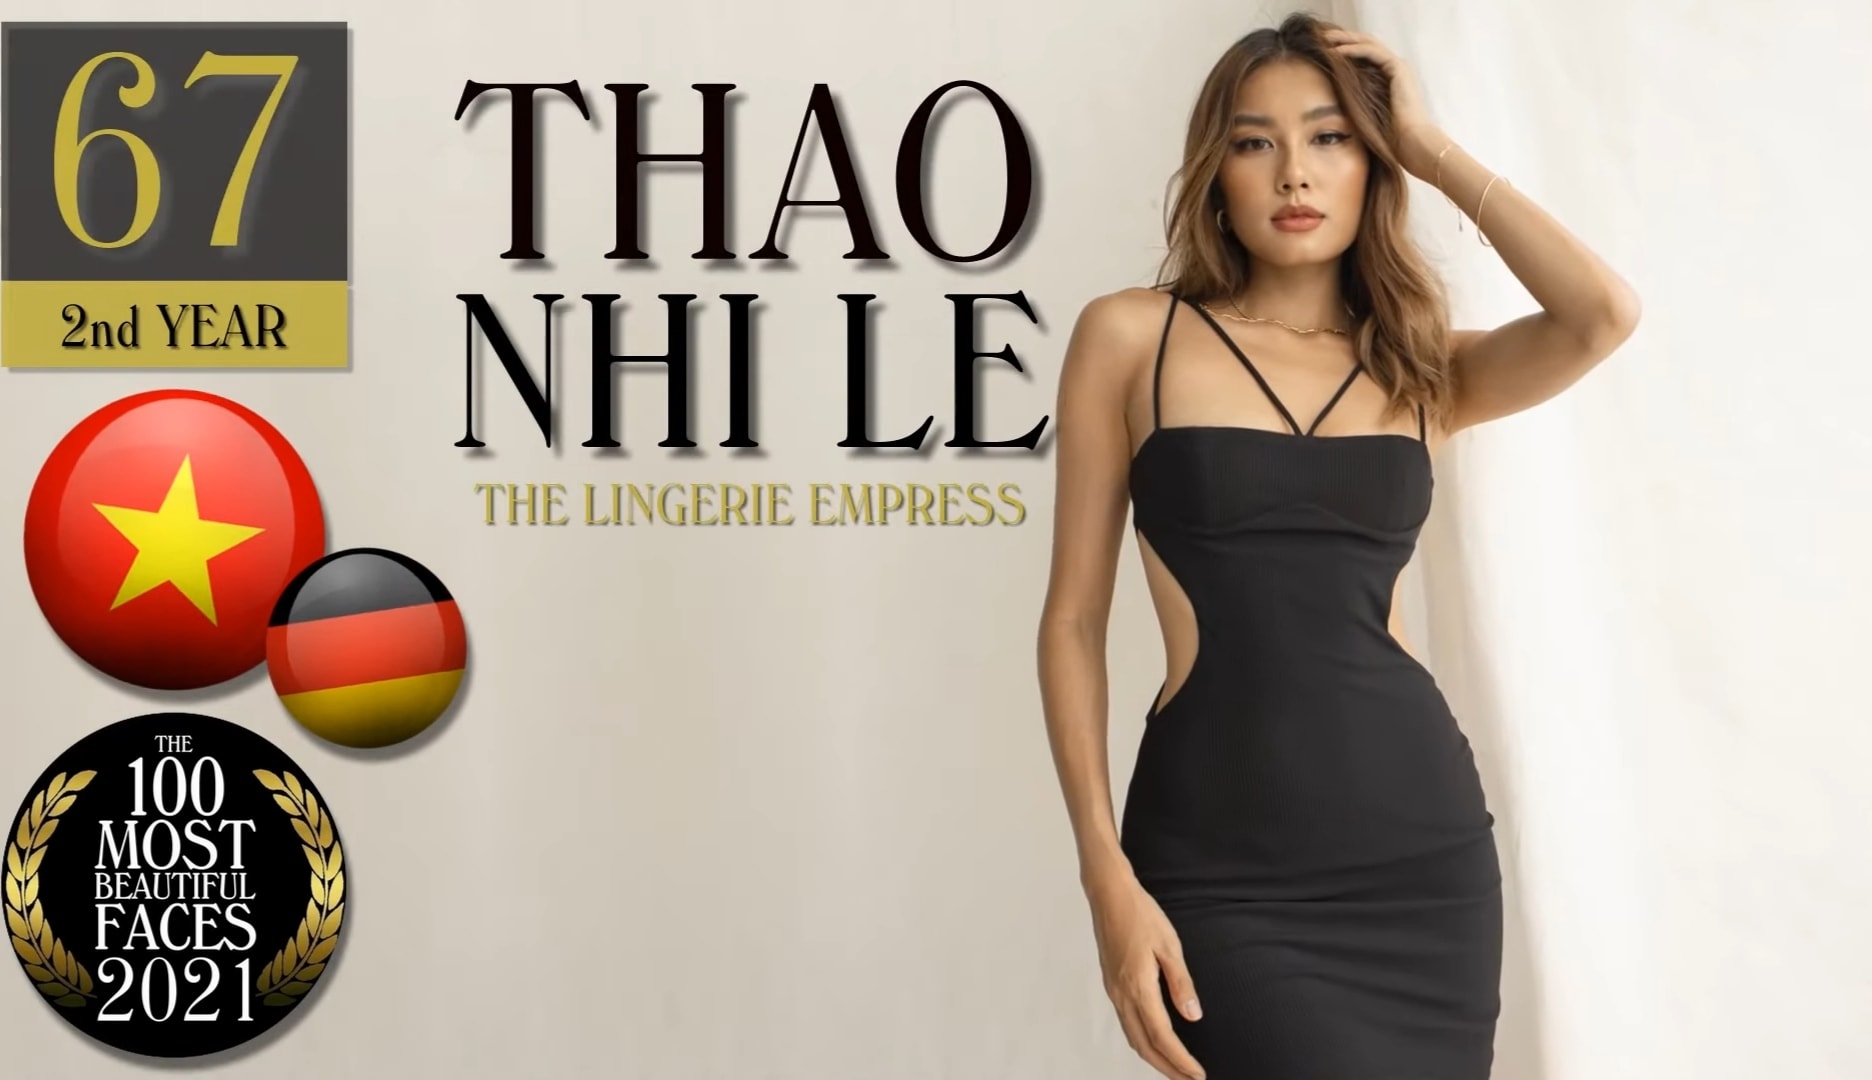 Mỹ nhân Việt trong Top 100 gương mặt đẹp nhất thế giới: Thi Miss Universe ở tuổi 27, không ngại danh xưng 'rich kid' - ảnh 1